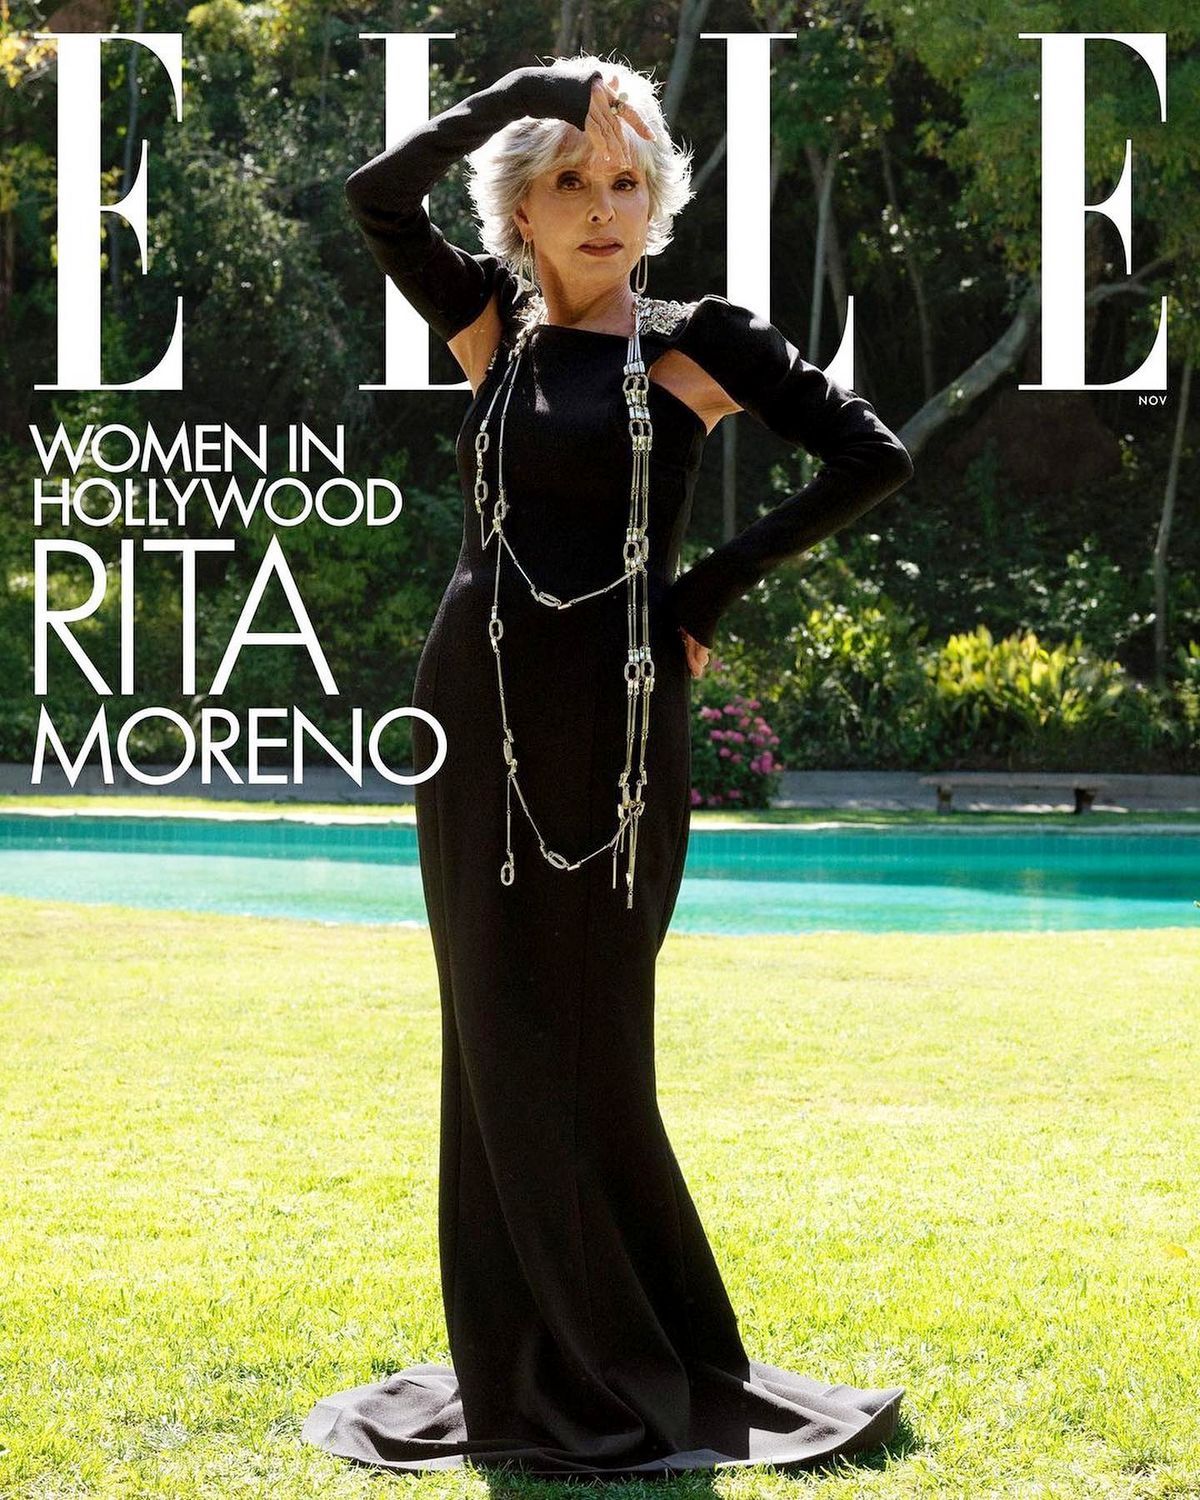 Рита Морено на обложке журнала Elle